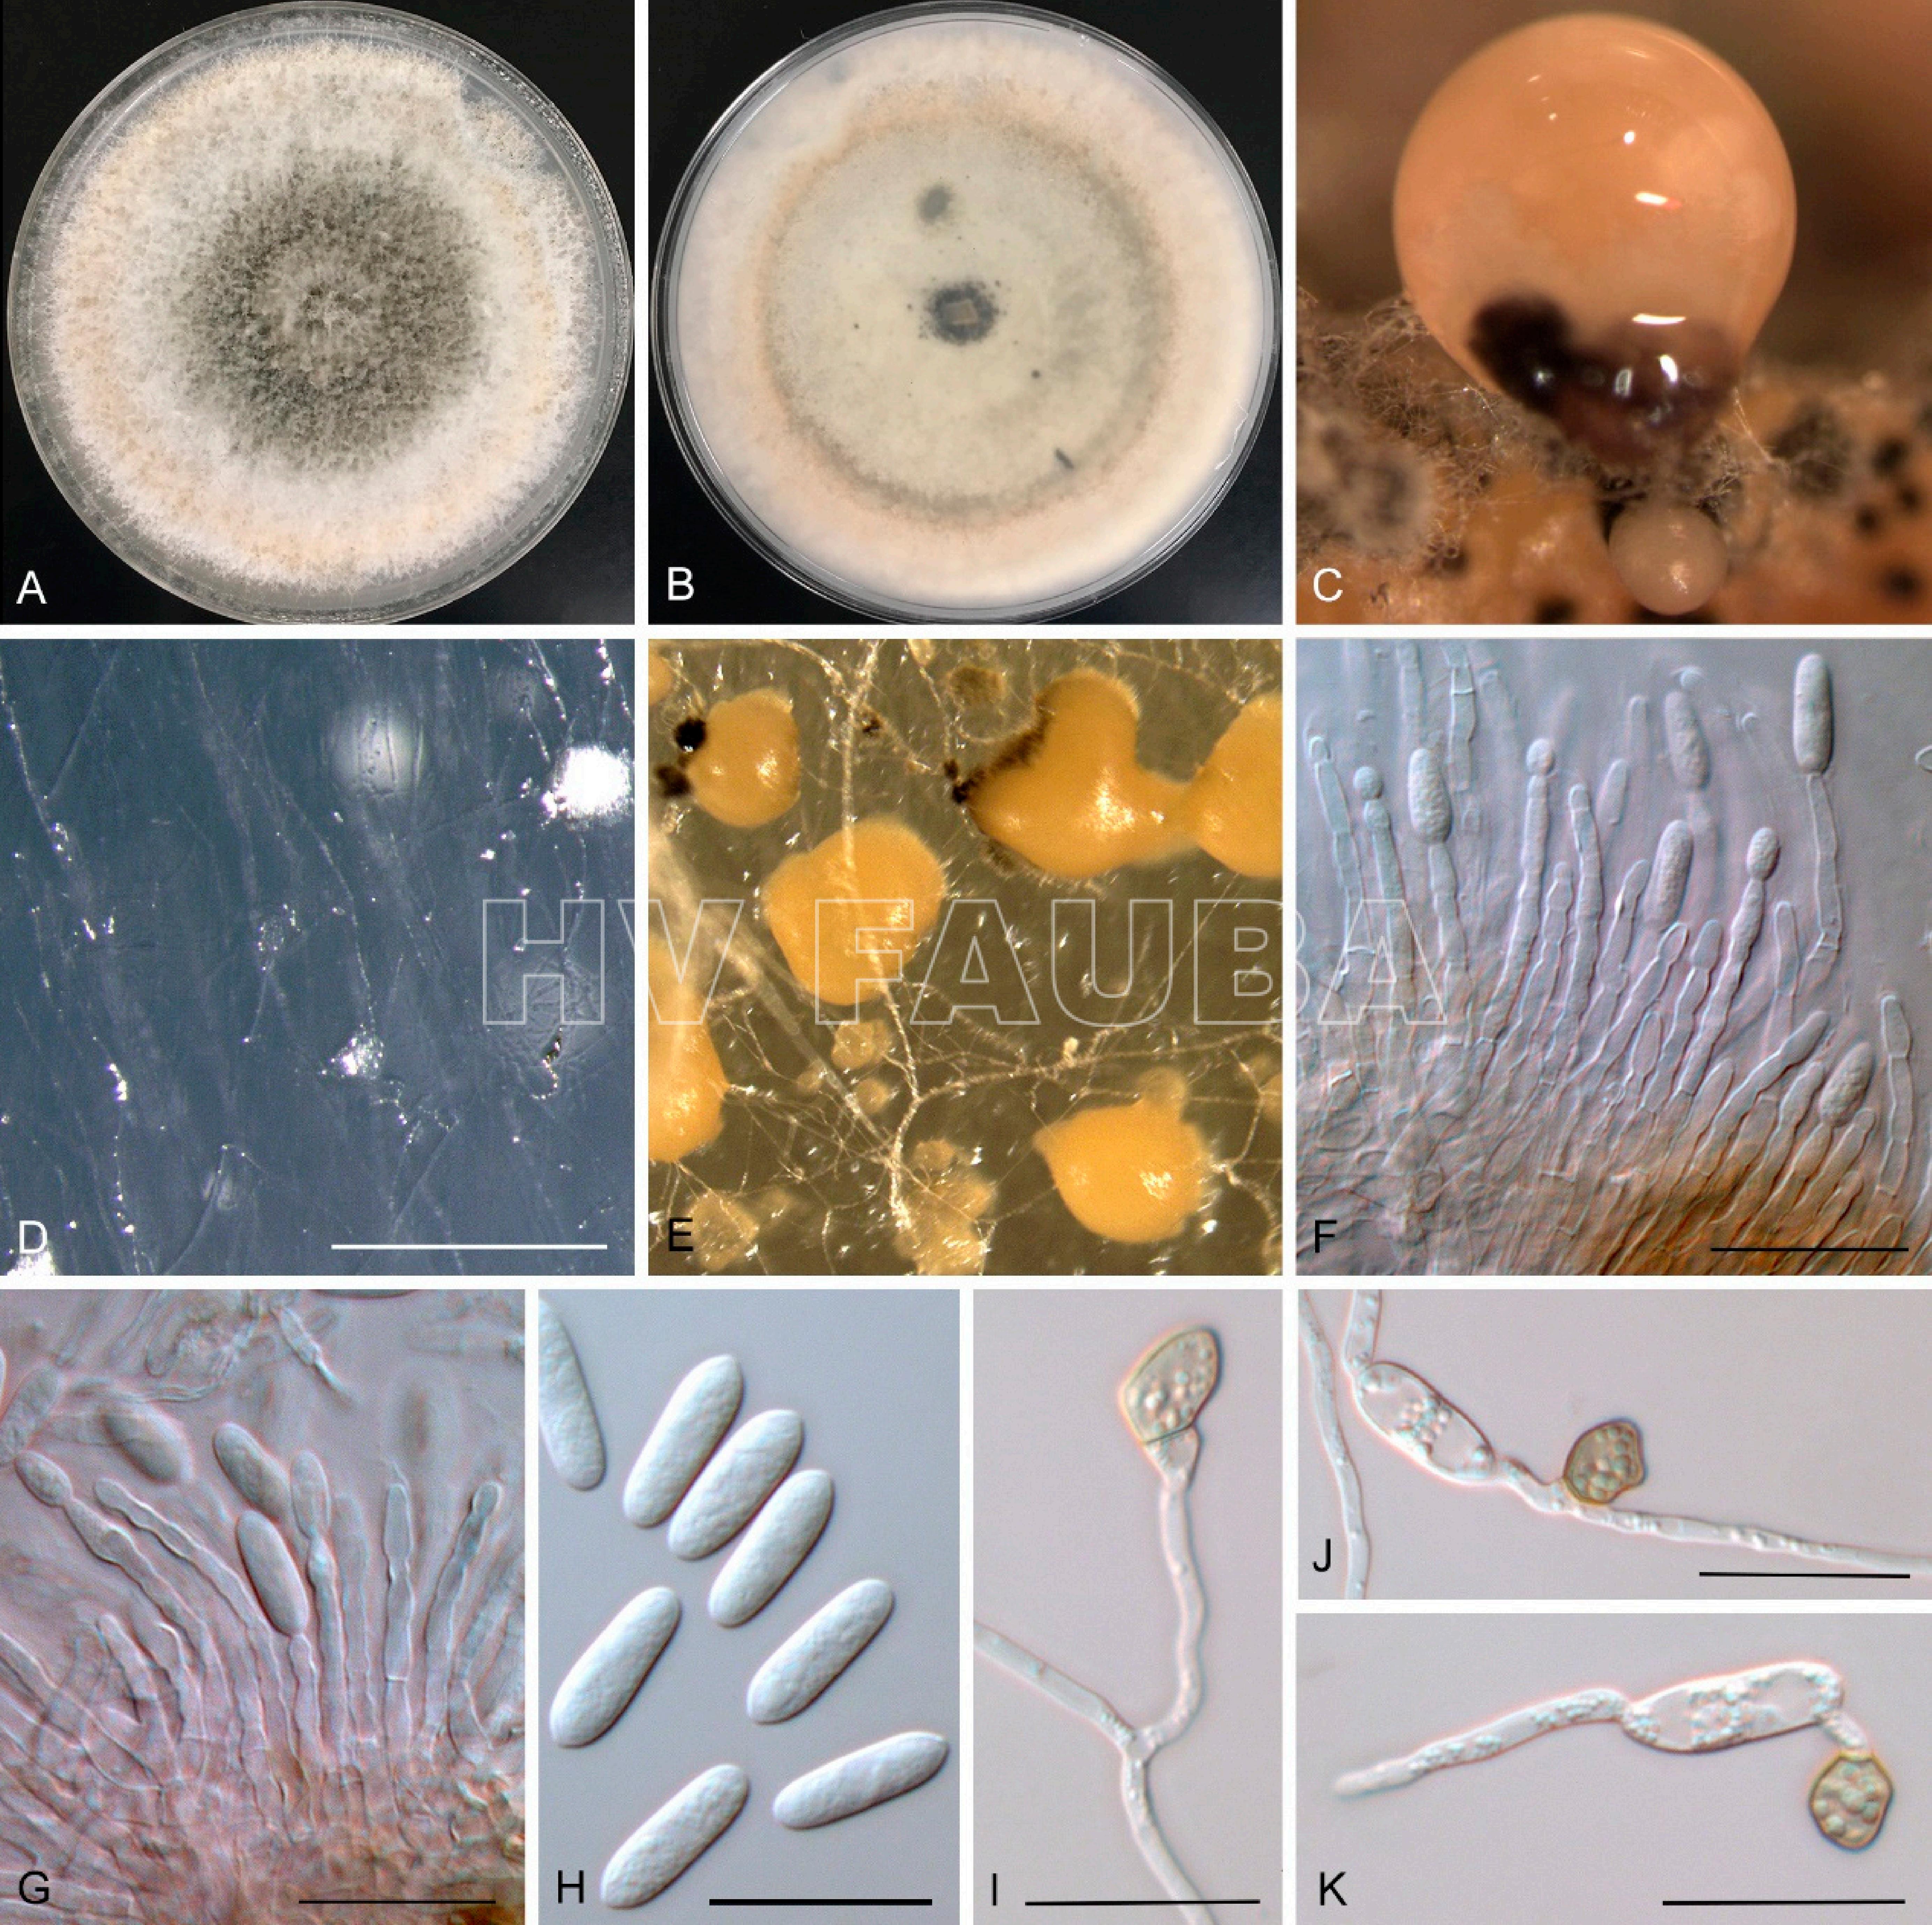 Características morfológicas de Colletotrichum australianum sp. nov .: Cultivo de una semana en PDA (A, B), conidiomas en cáscara de mandarina (C), conidiomas en SNA (D), conidiomas en PDA (E), conidióforos (F, G), conidios (H) y apresorios (I – K). Barras de escala: D, 500 µm; F, G, H, I, J, K, 20 µm. Autor: Wang et al 2021.